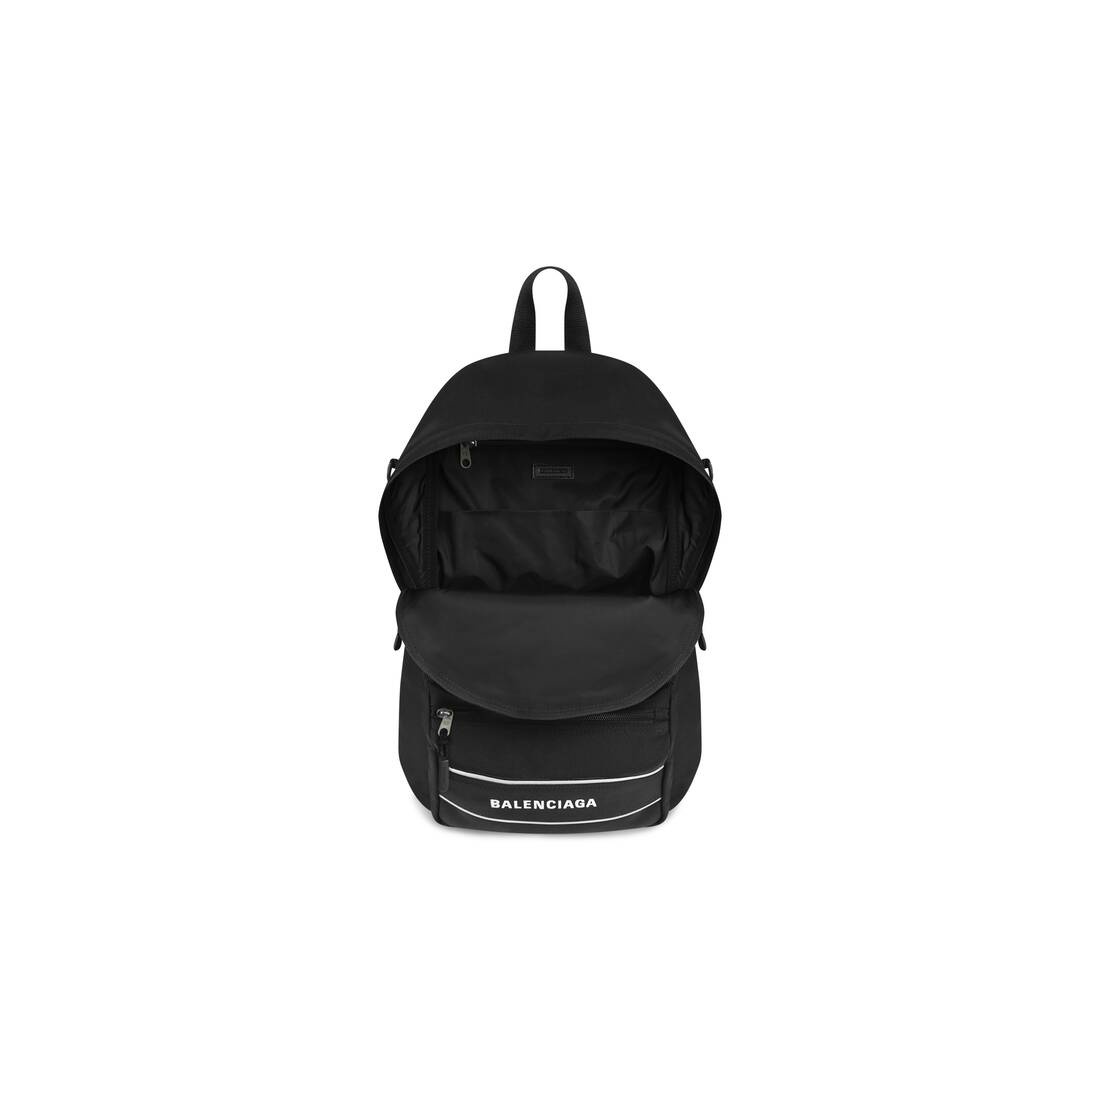 Men's Sport Crossbody Backpack in Black/white - 4